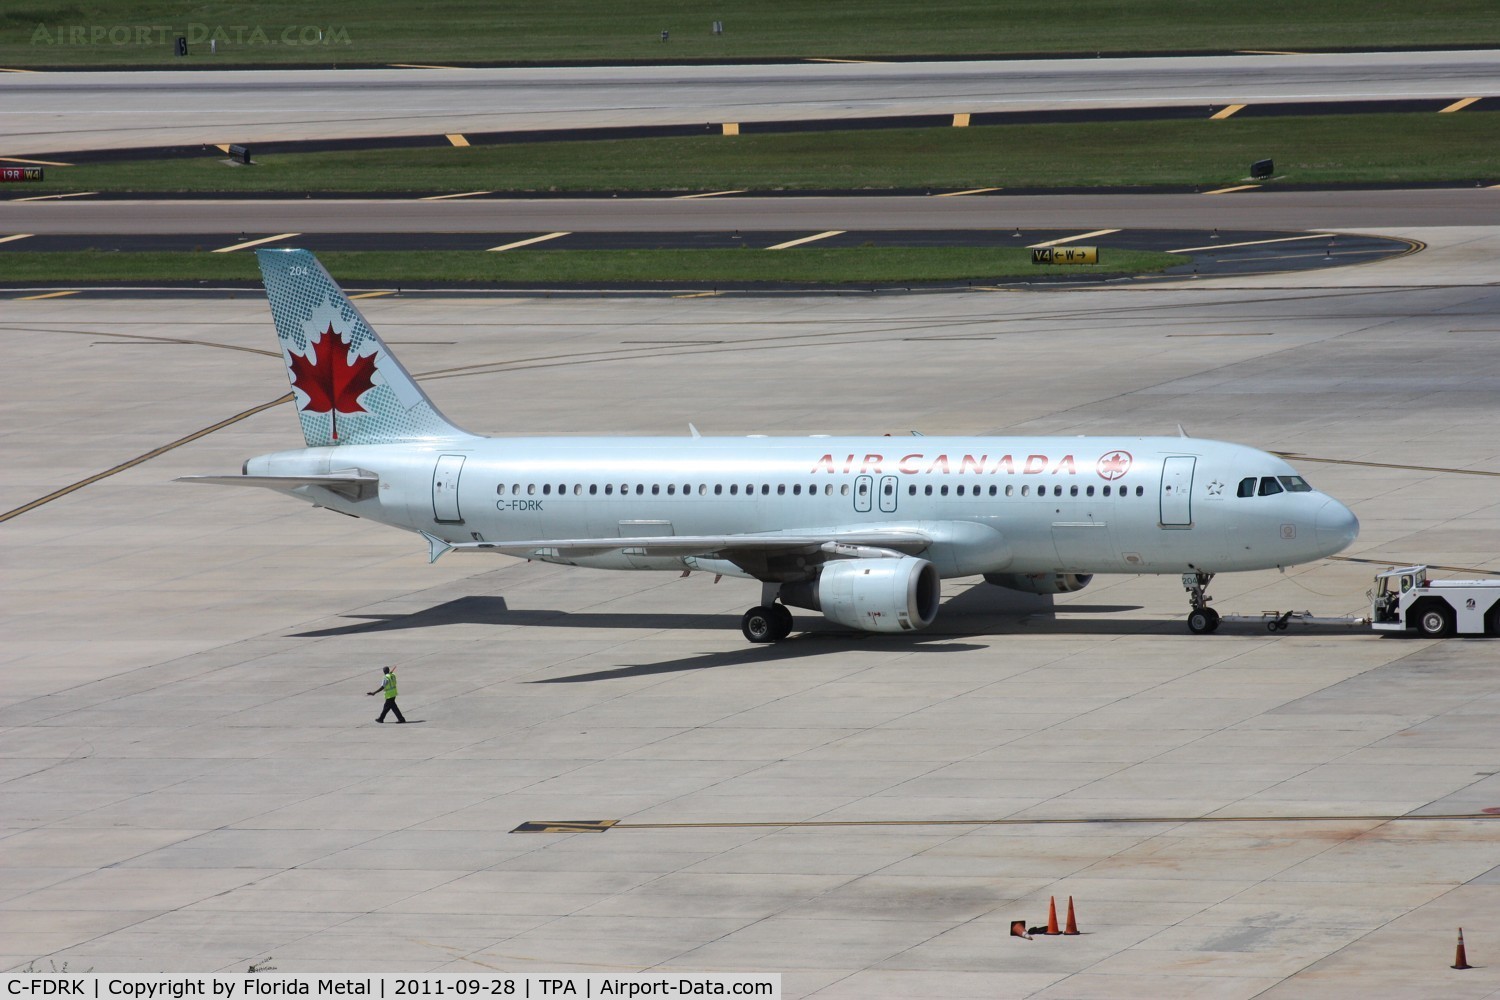 C-FDRK, 1990 Airbus A320-211 C/N 084, Air Canada A320